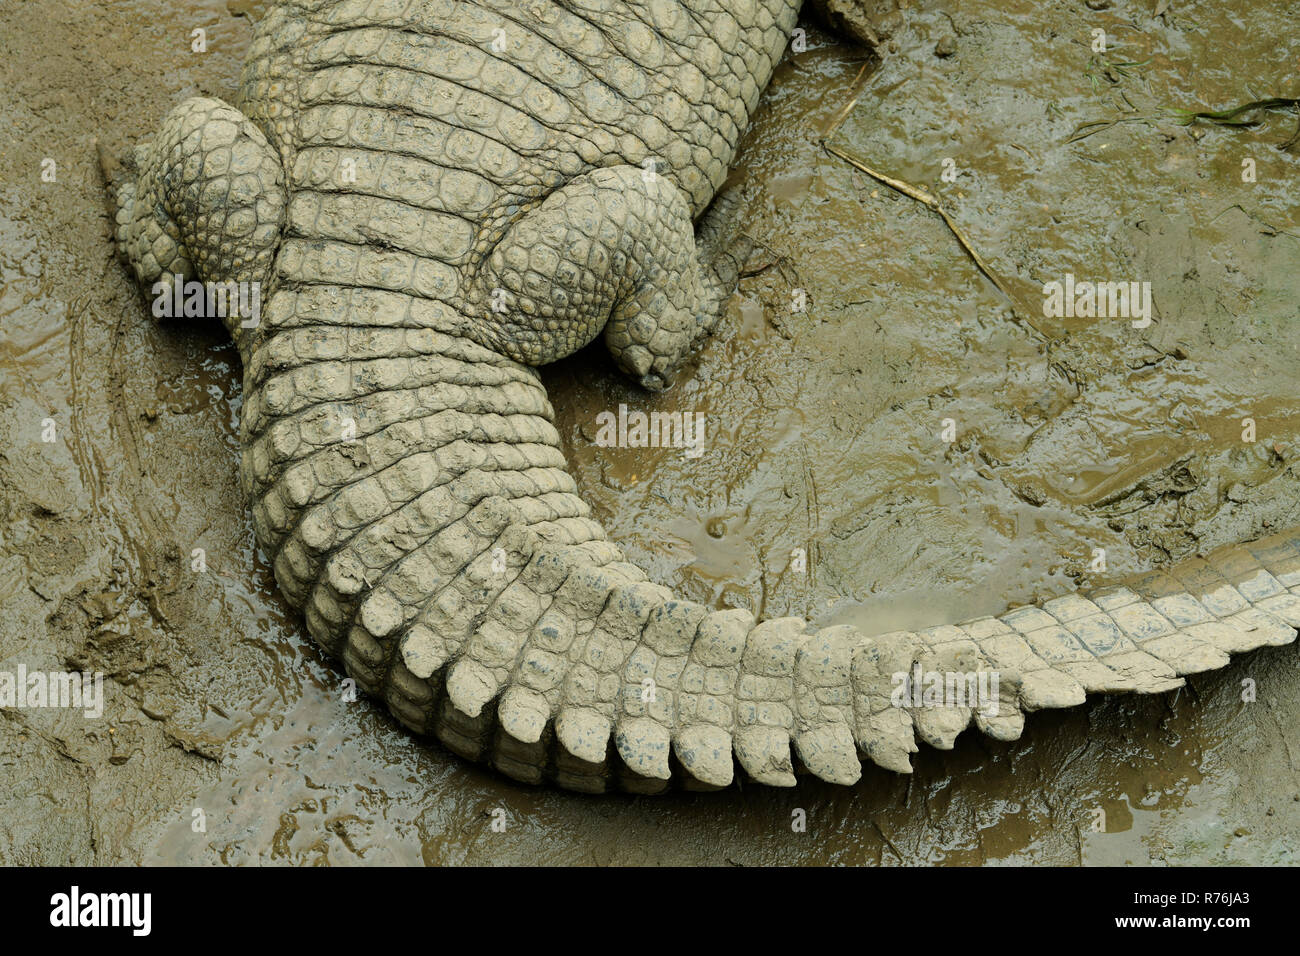 El cocodrilo del Nilo, Crocodylus niloticus, mintiendo con cola en la curva que muestra el patrón y la disposición de las escamas en la piel del animal Foto de stock